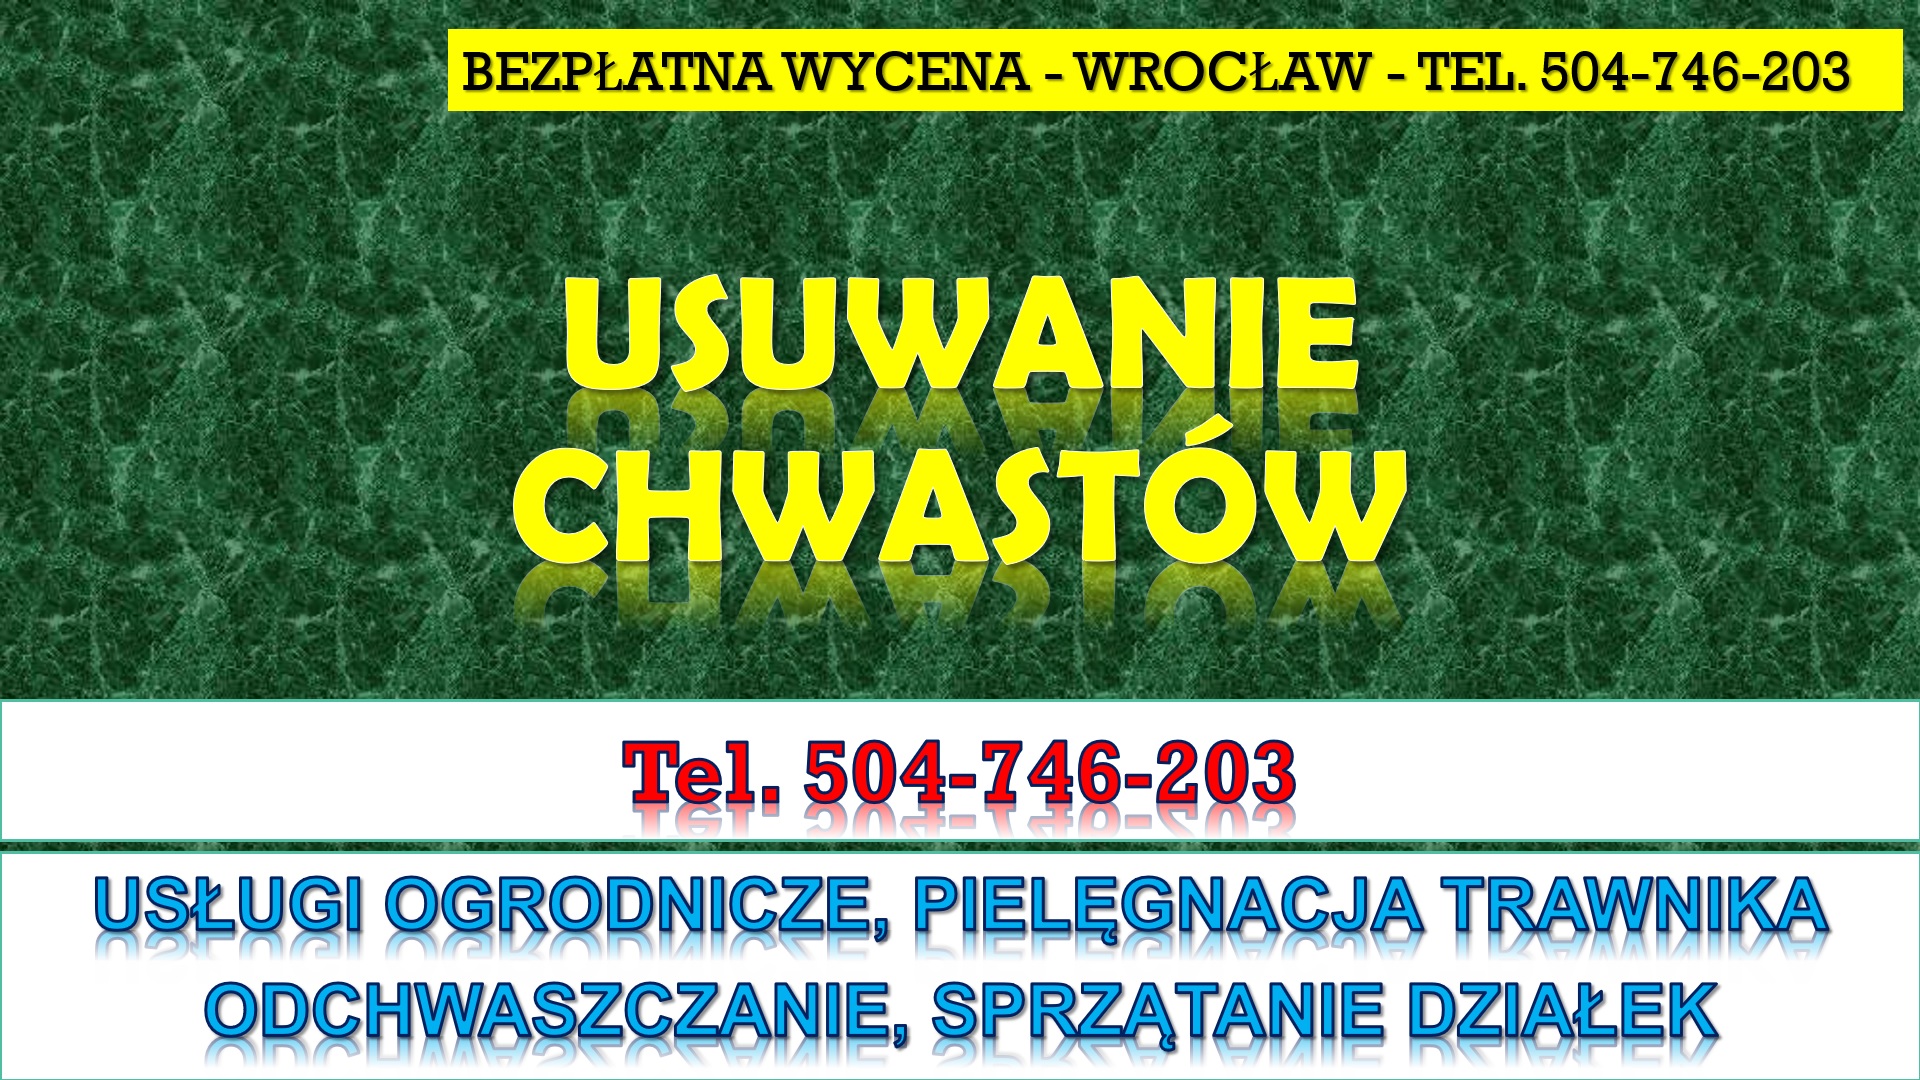 Pielenie i usuwanie chwastów, cennik, tel. 504-746-203, Wrocław. Pielęgnacja trawnik. Usługi  ogrodnicze, odchwaszczenie działki